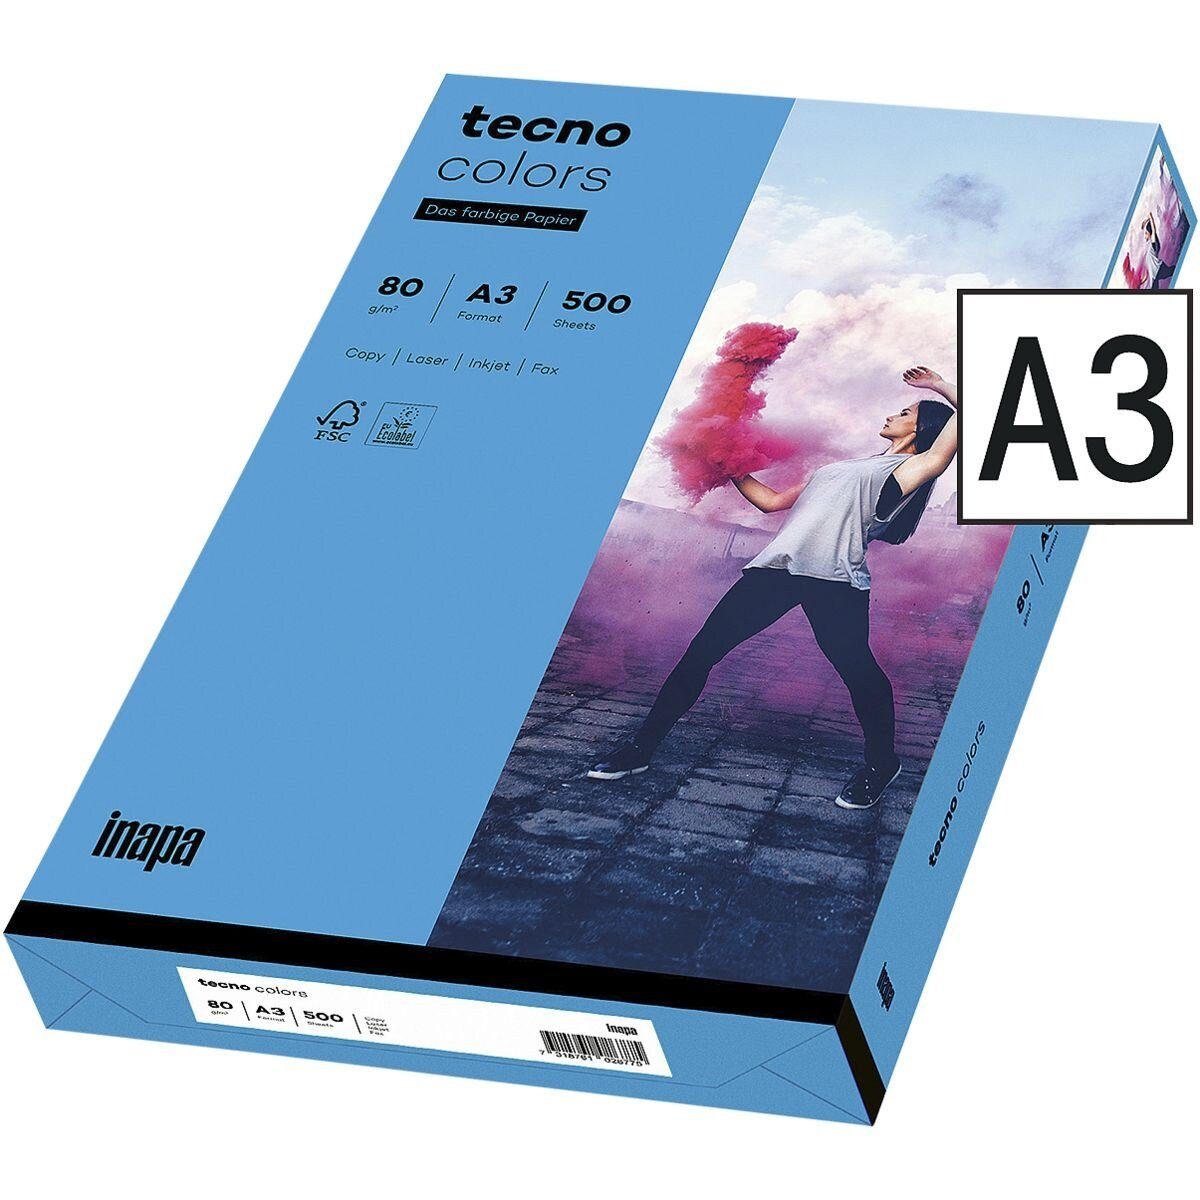 Inapa tecno Drucker- und Kopierpapier Rainbow / tecno Colors, Intensivfarben, Format DIN A3, 80 g/m², 500 Blatt intensivblau